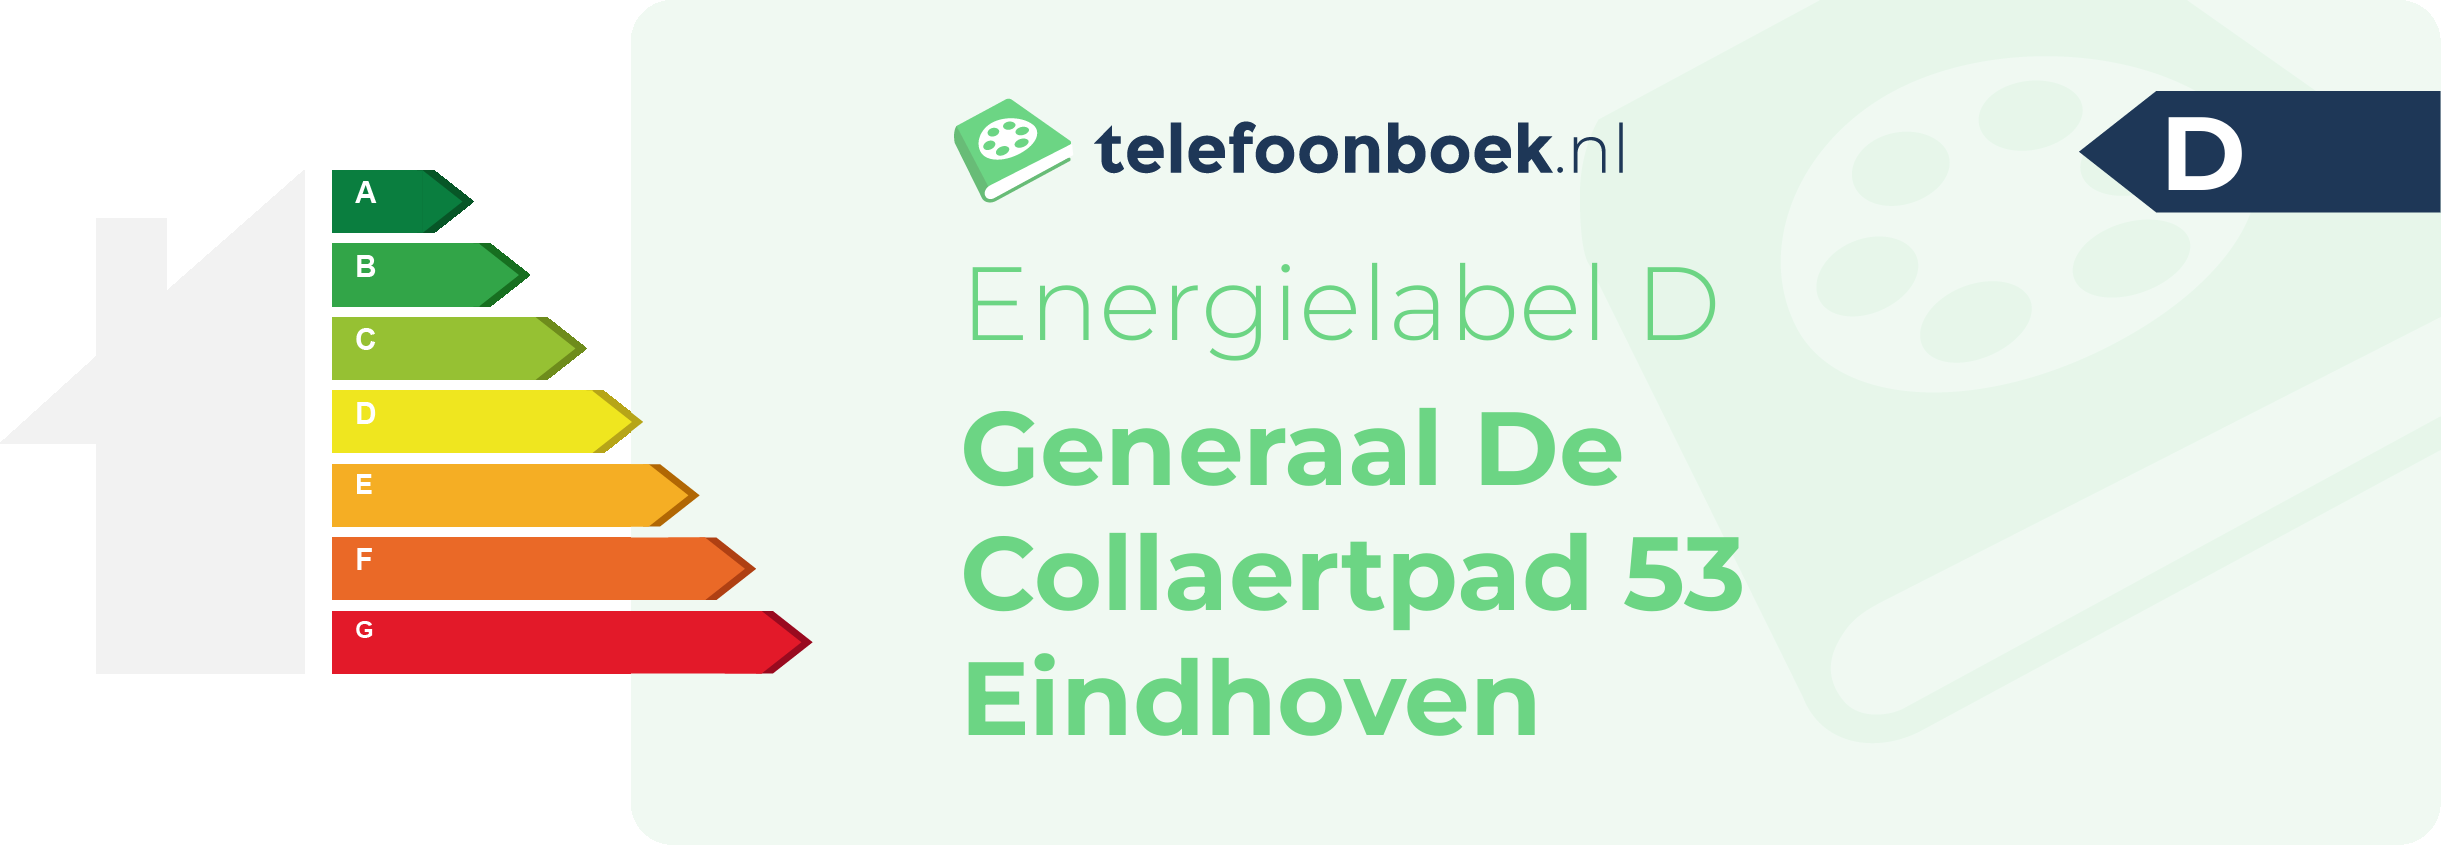 Energielabel Generaal De Collaertpad 53 Eindhoven